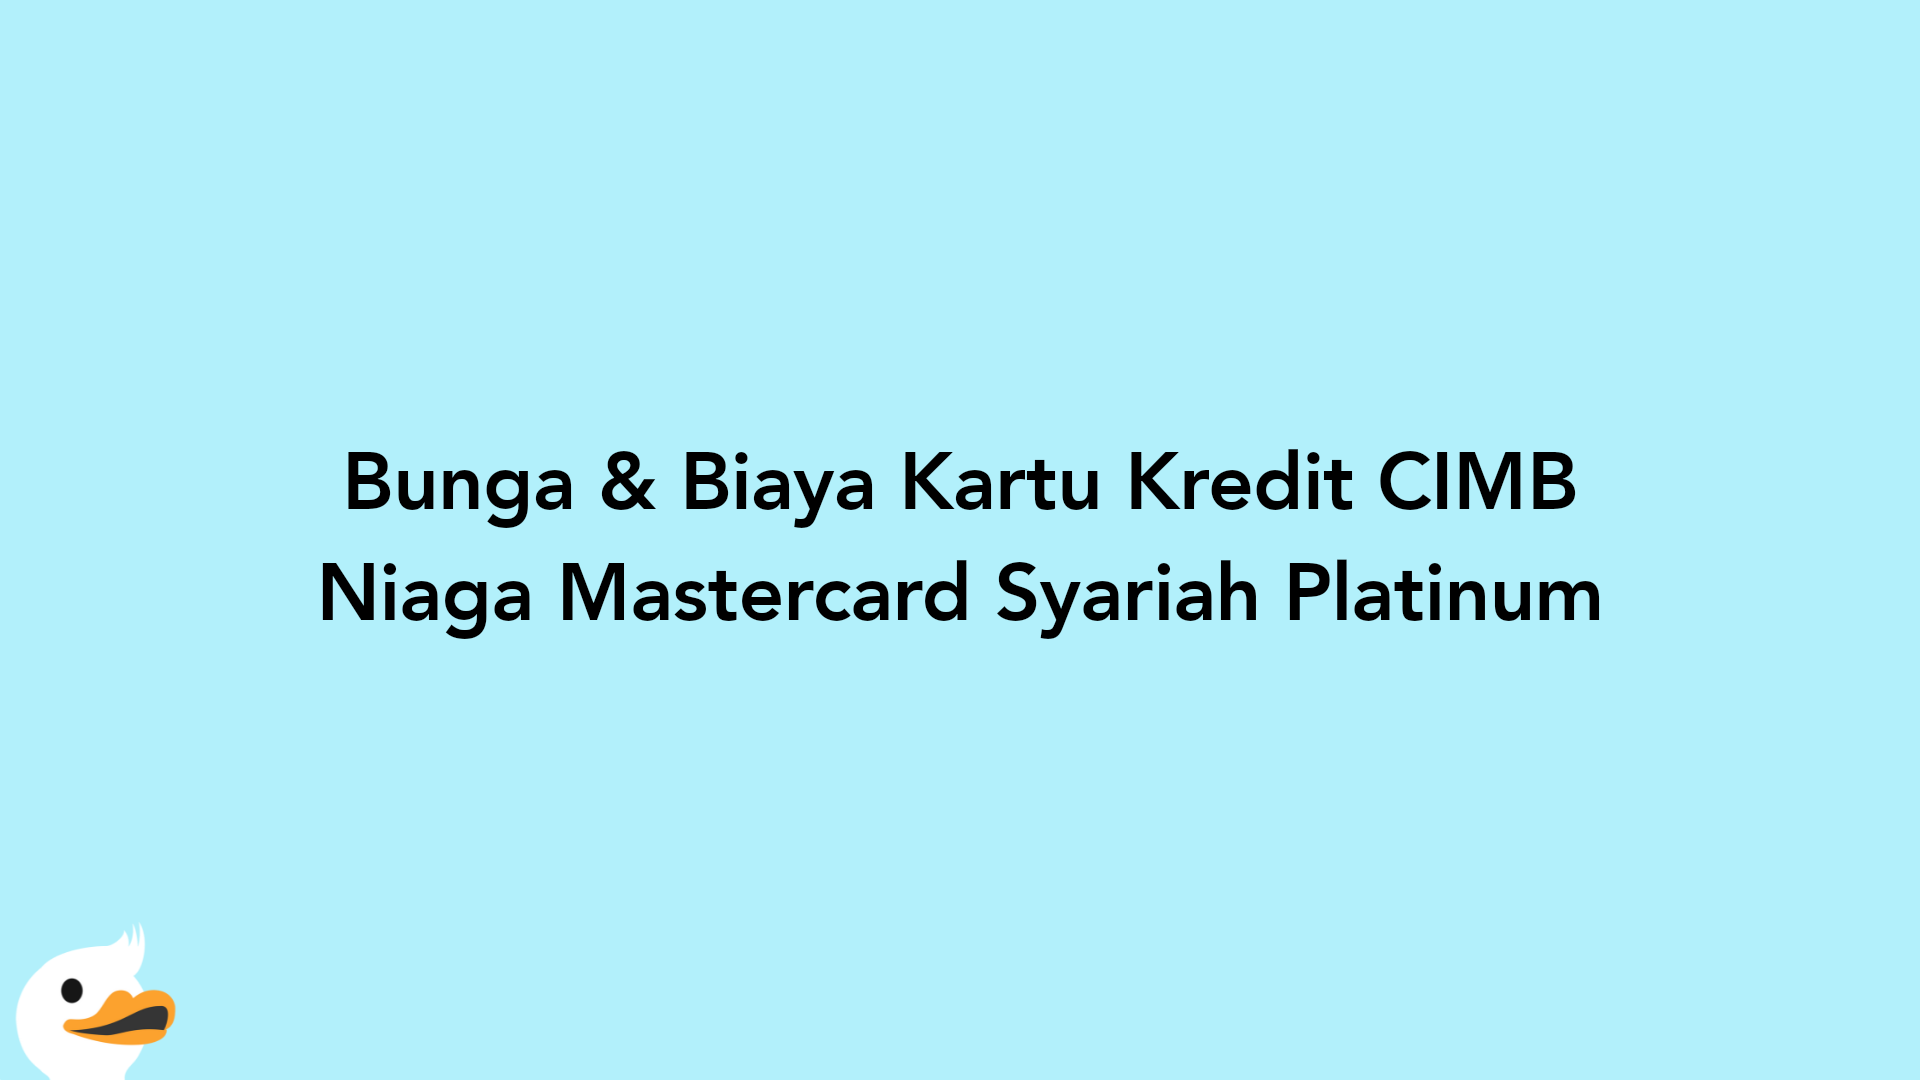 Bunga & Biaya Kartu Kredit CIMB Niaga Mastercard Syariah Platinum